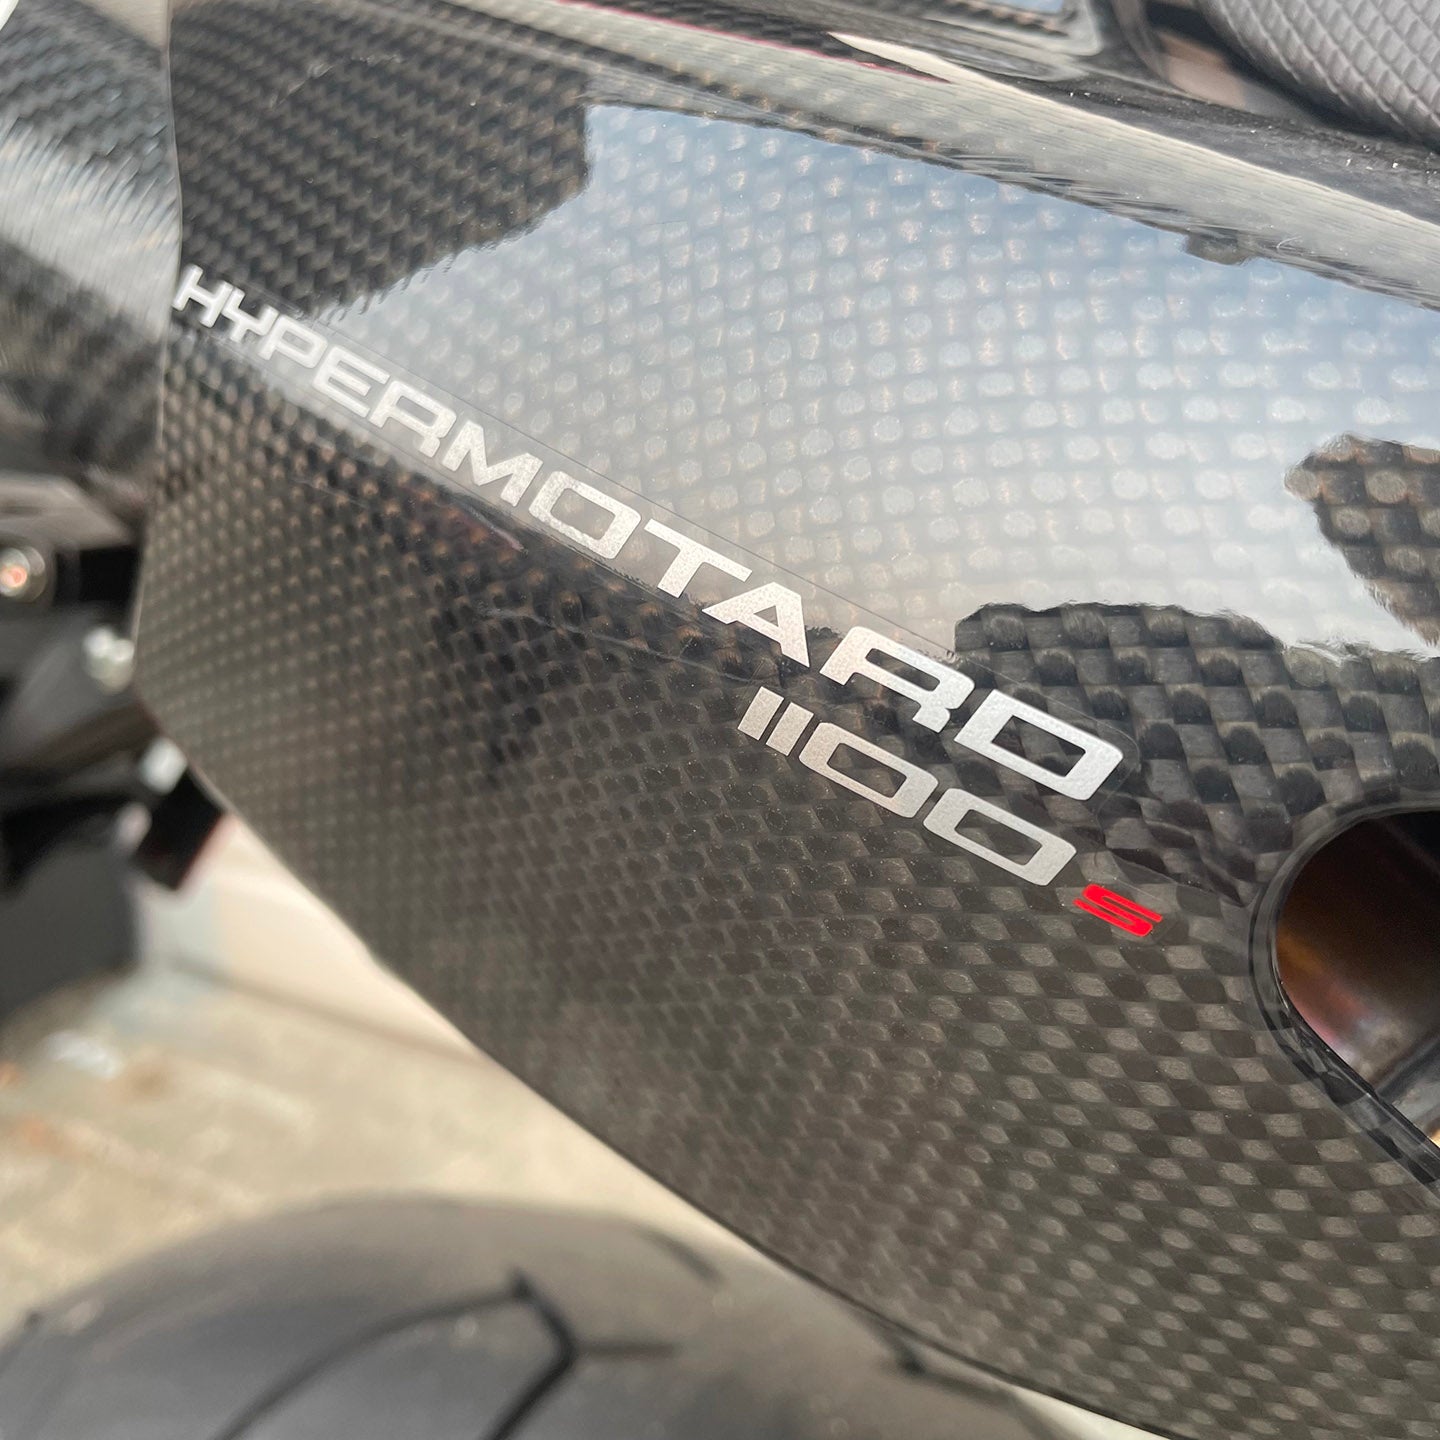 2008 Ducati Hypermotard 1100S (683 Miles)